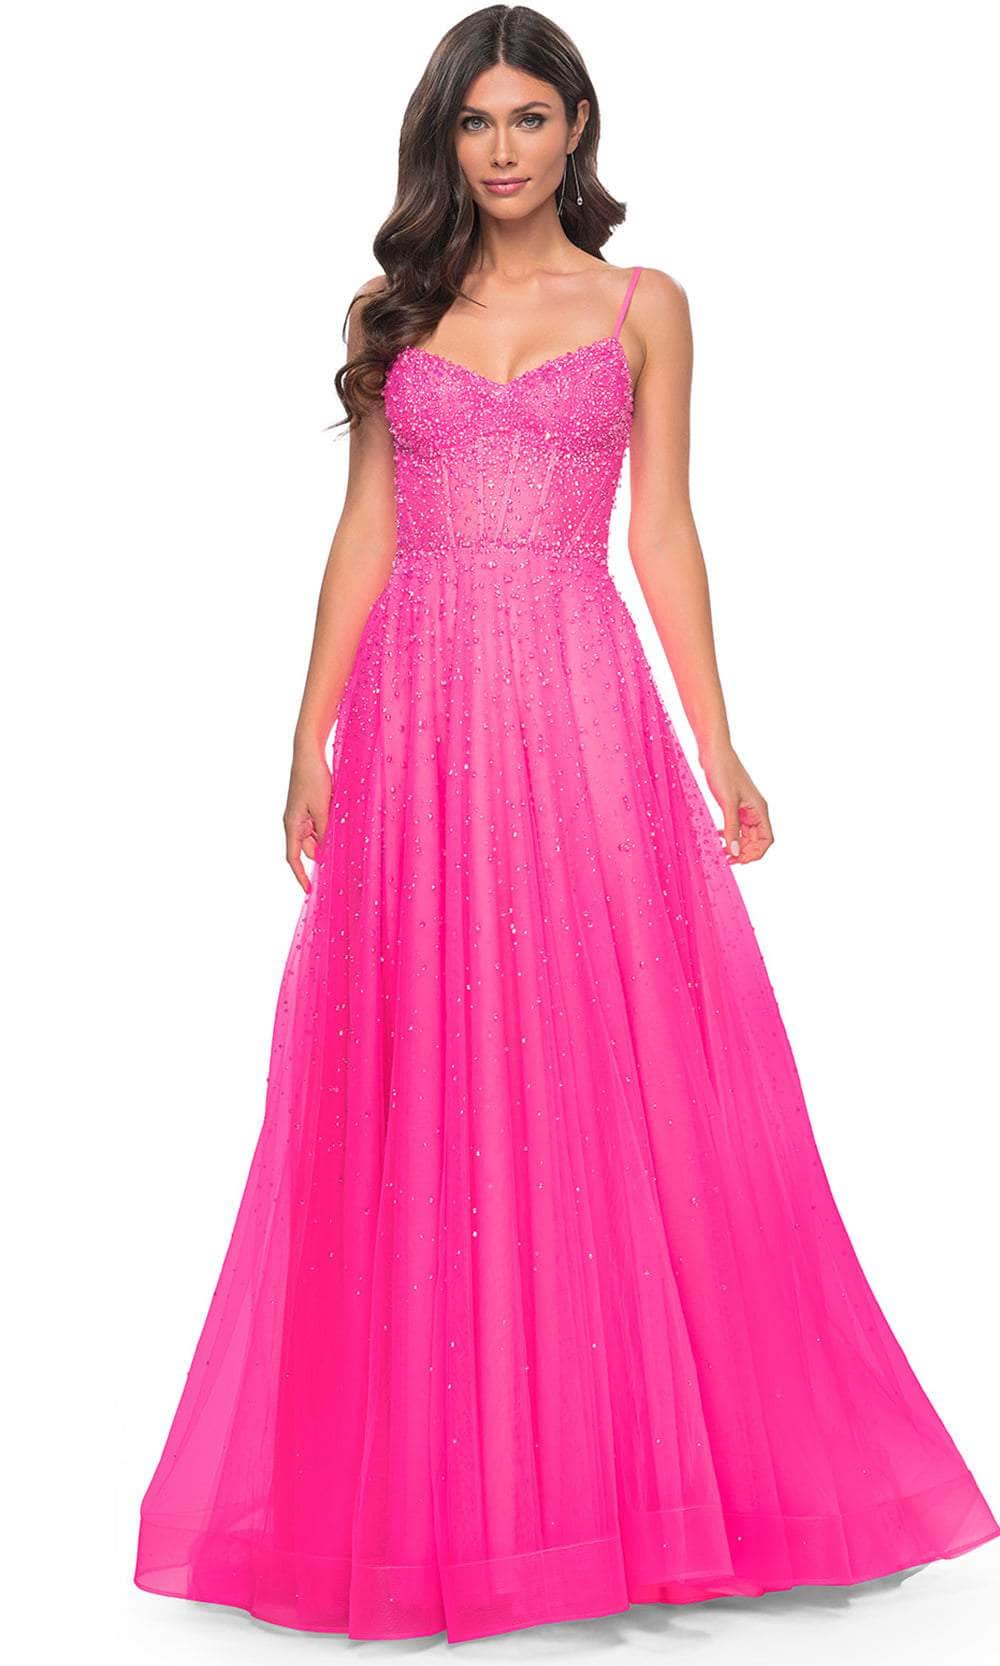 La Femme 32146 - Embellished Tulle Prom Dress Special Occasion Dresses